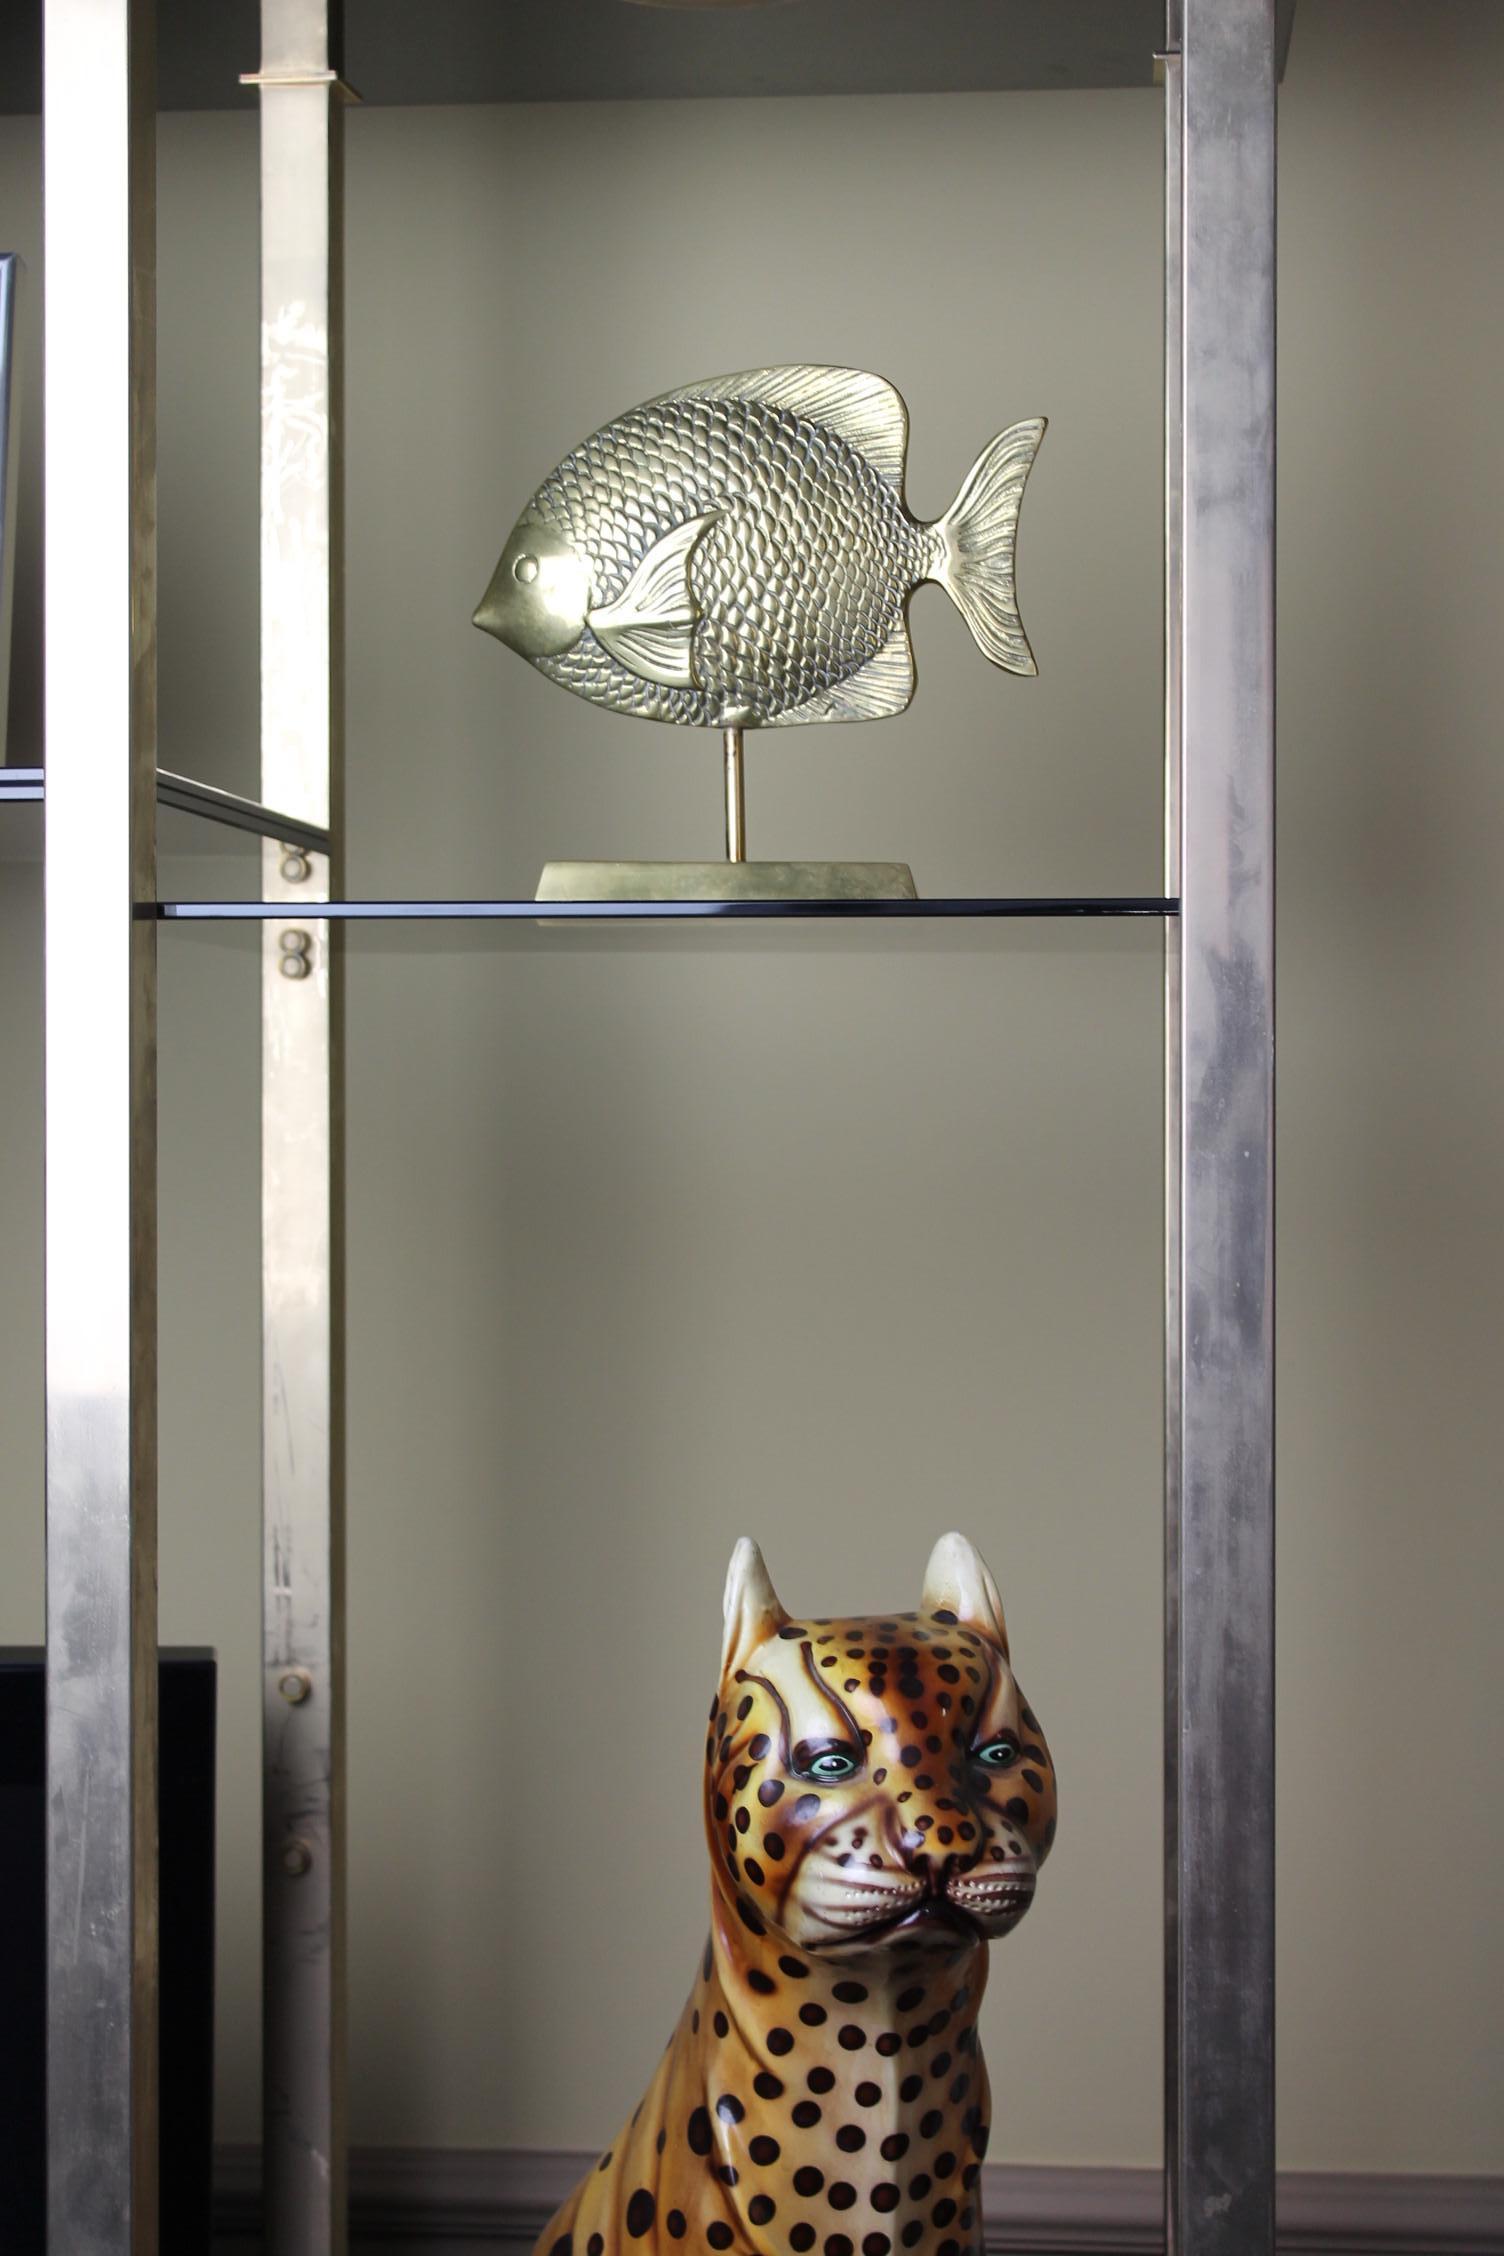 brass fish sculpture